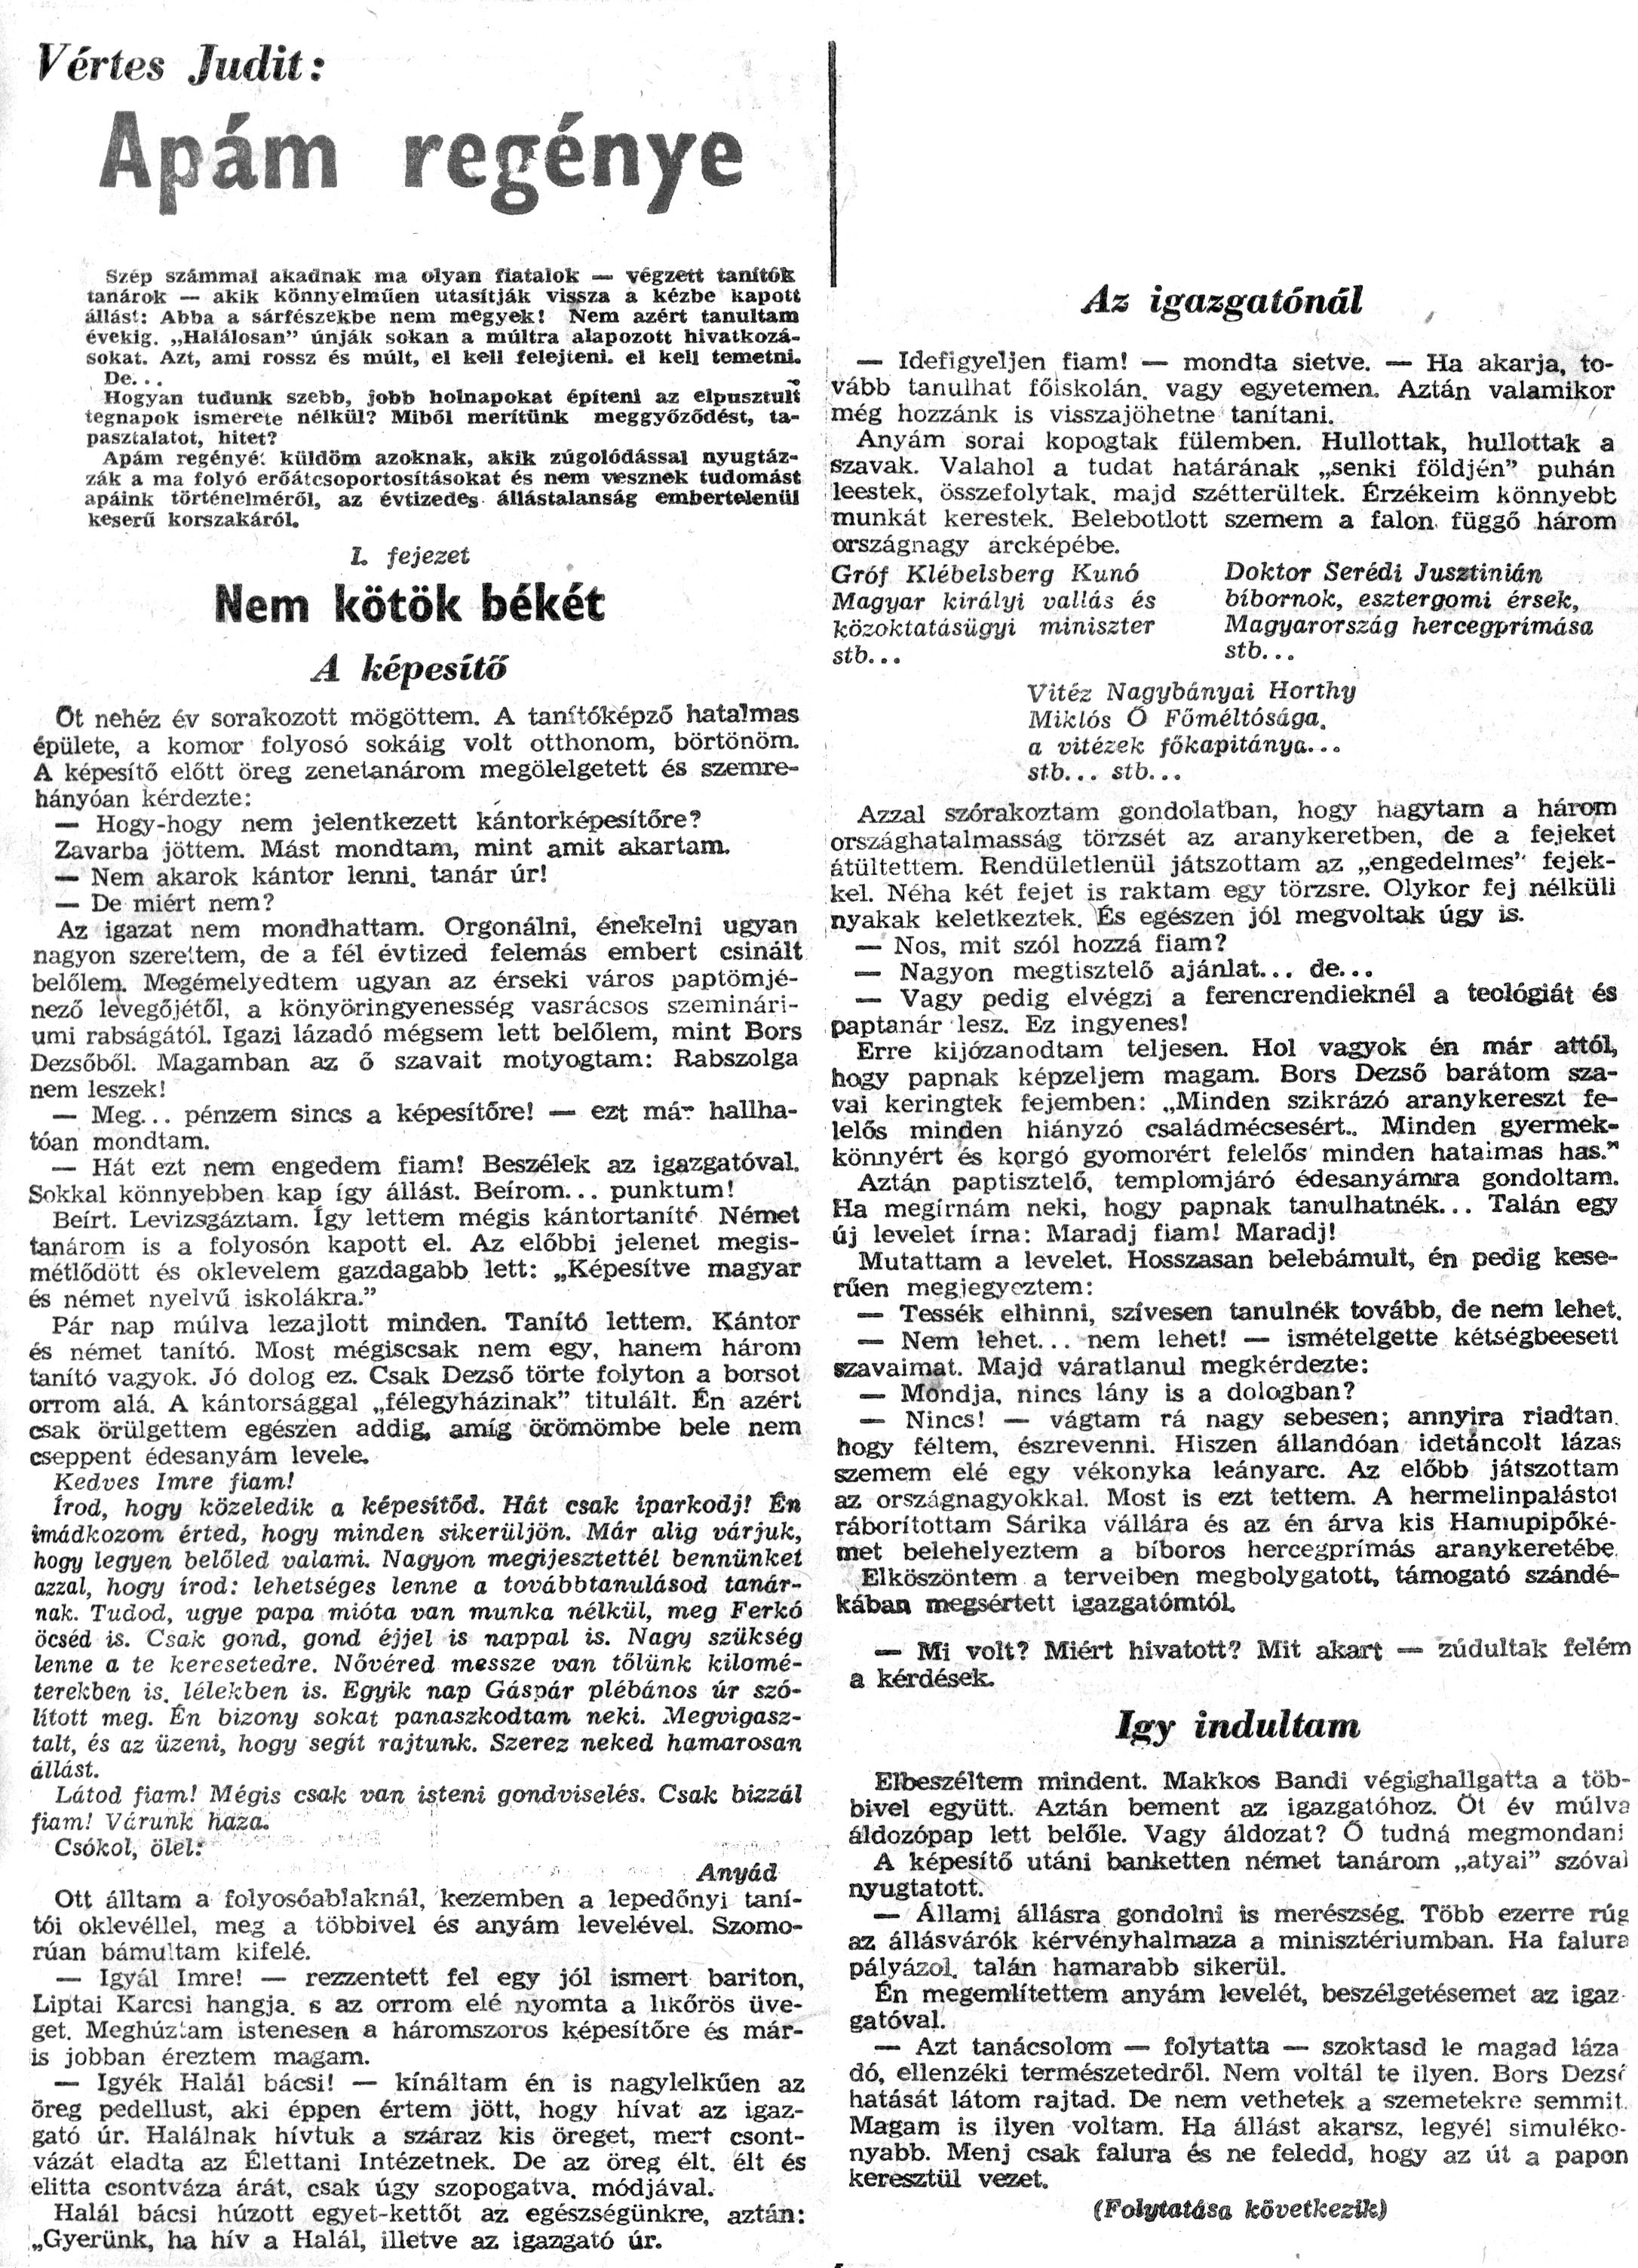 Zalai Hírlap 1971.01.01. 001s